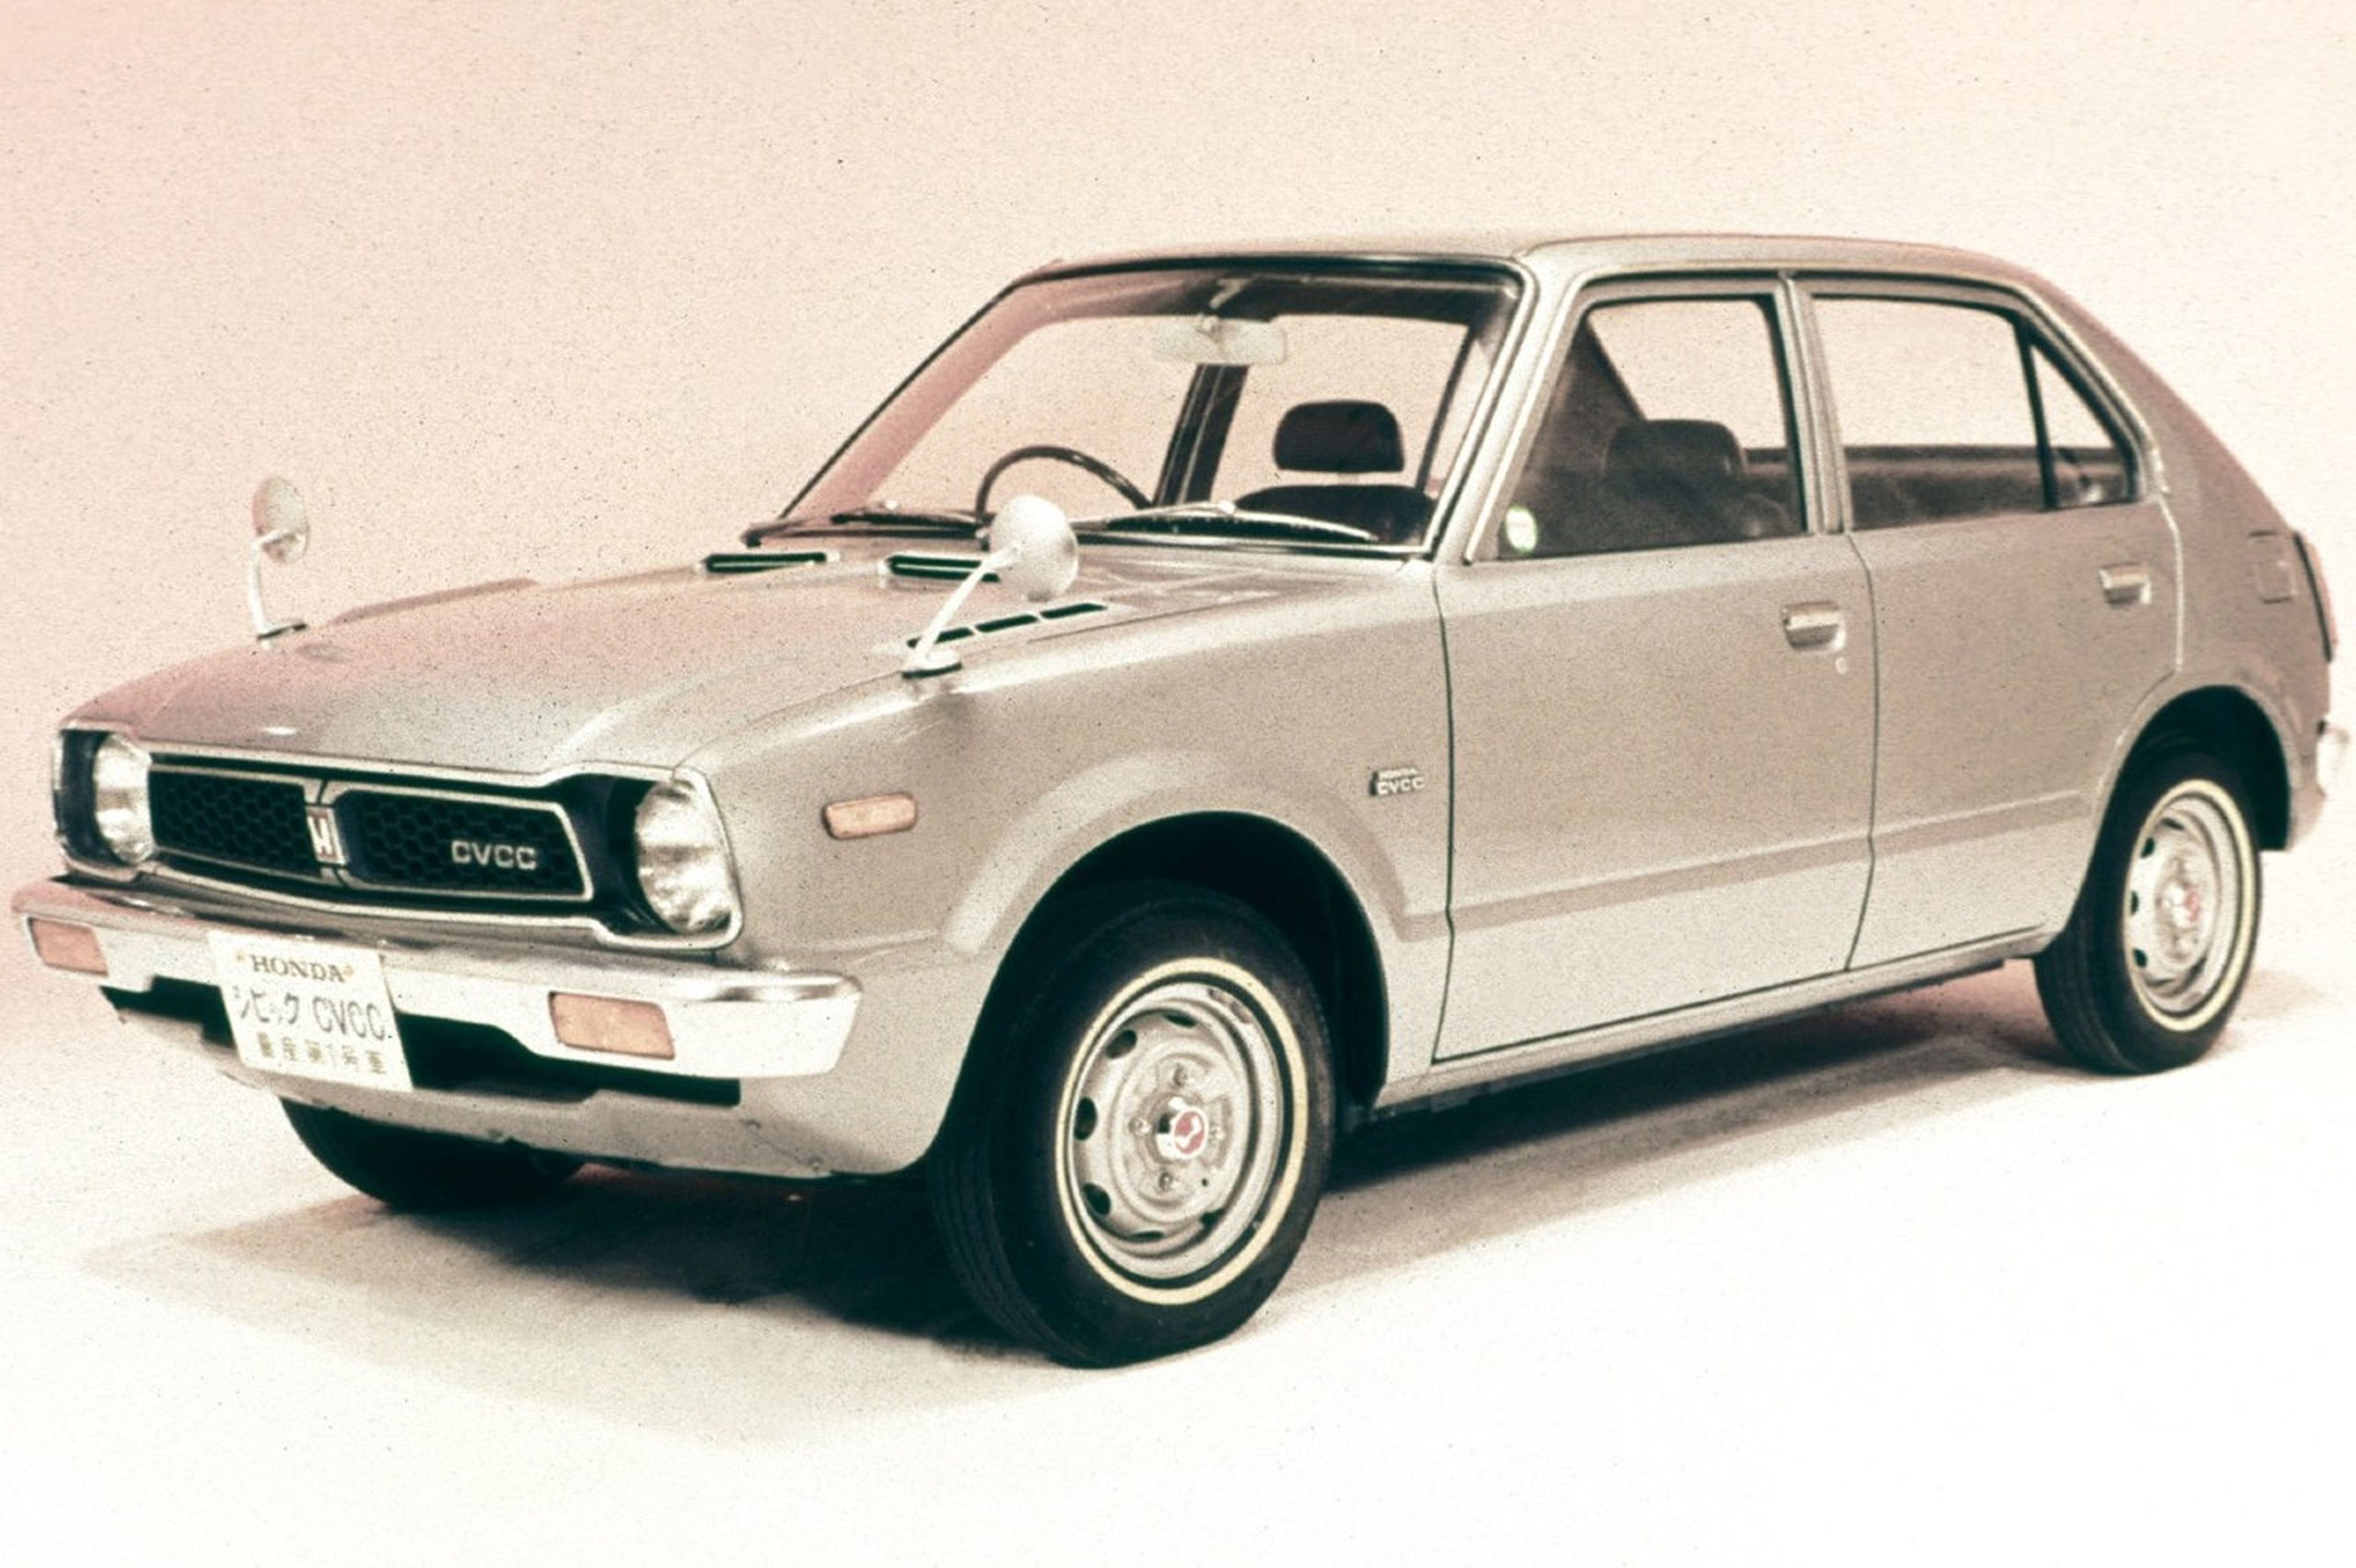 El Honda Civic llegó en 1972 como un modelo práctico y económico